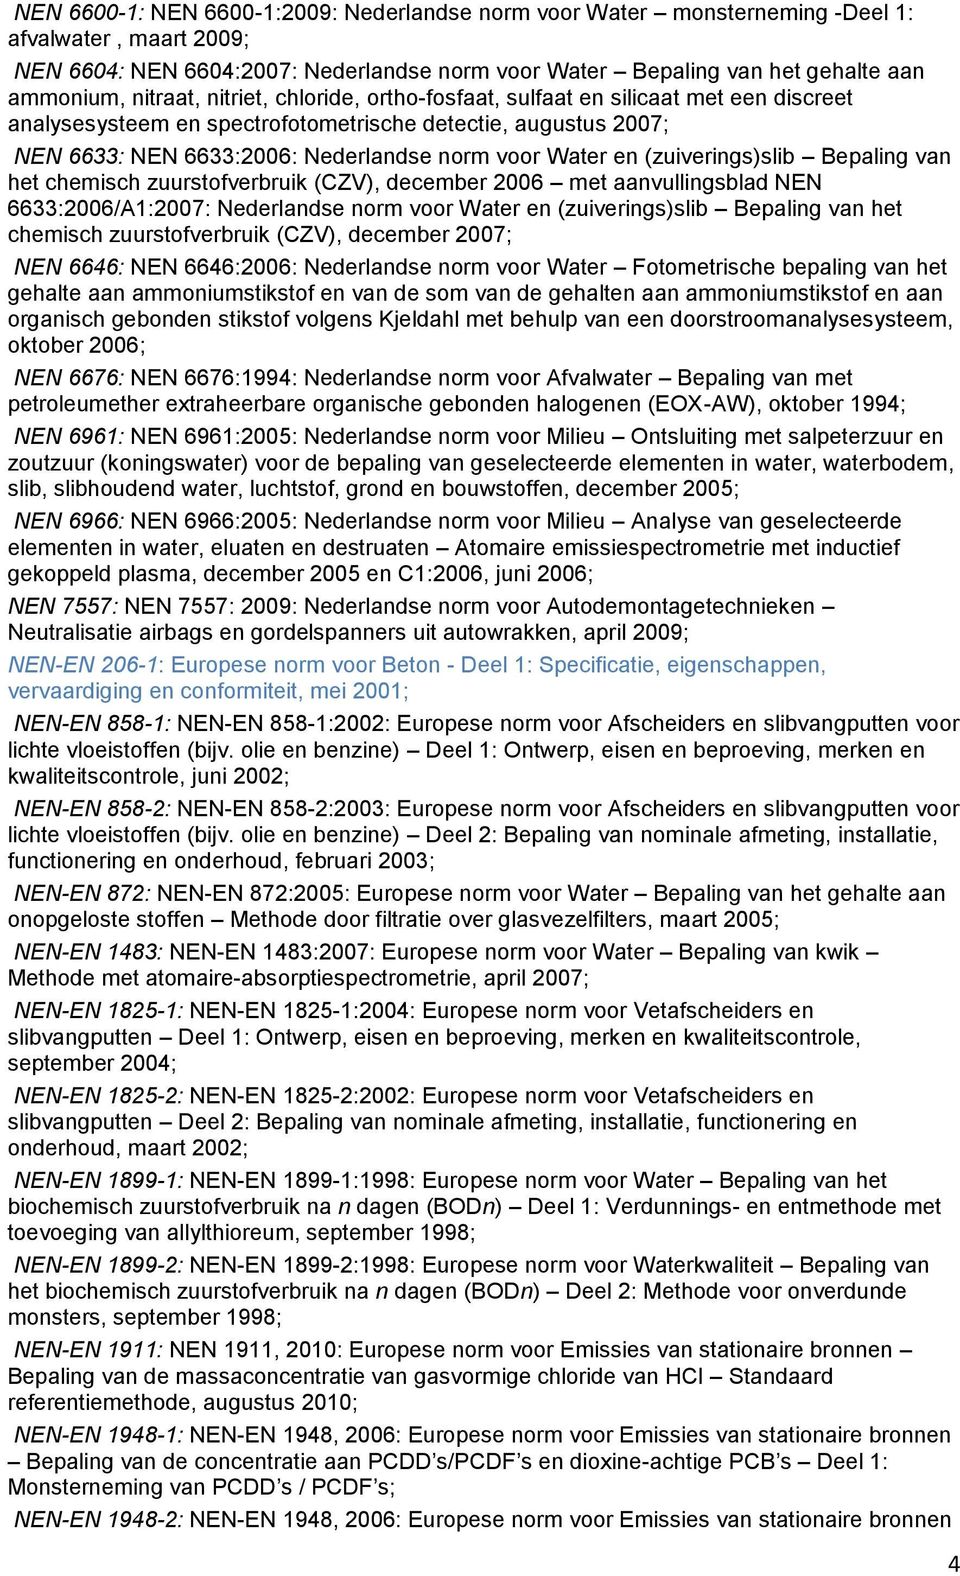 (zuiverings)slib Bepaling van het chemisch zuurstofverbruik (CZV), december 2006 met aanvullingsblad NEN 6633:2006/A1:2007: Nederlandse norm voor Water en (zuiverings)slib Bepaling van het chemisch